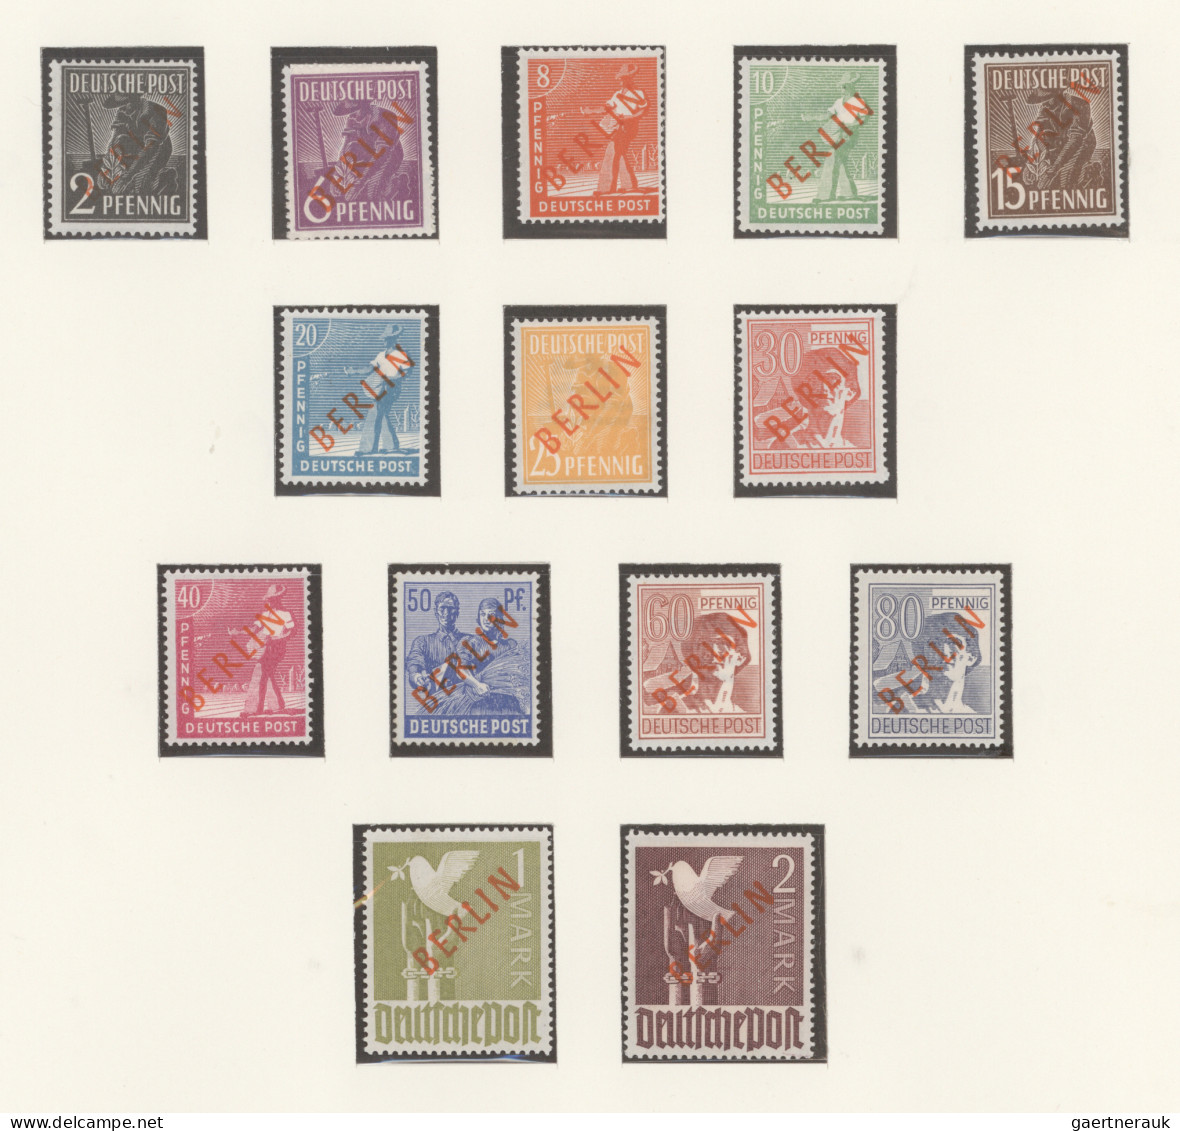 Deutschland Nach 1945: 1945/1990, Sammlernachlass Deutschland (Bund/Berlin/DDR) - Sammlungen